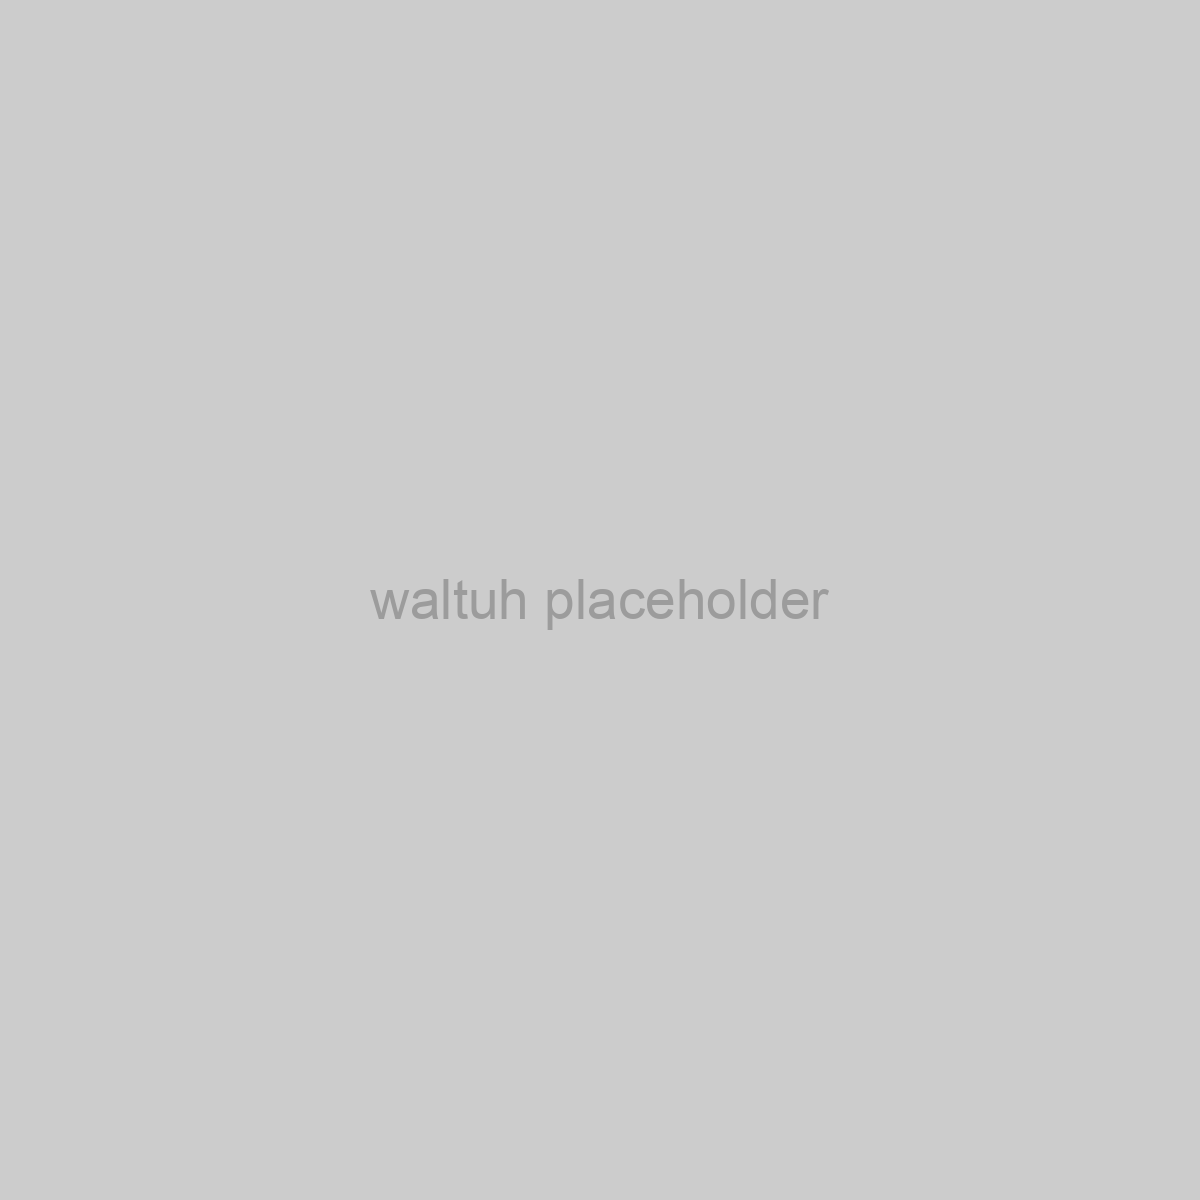 waltuh Placeholder Image